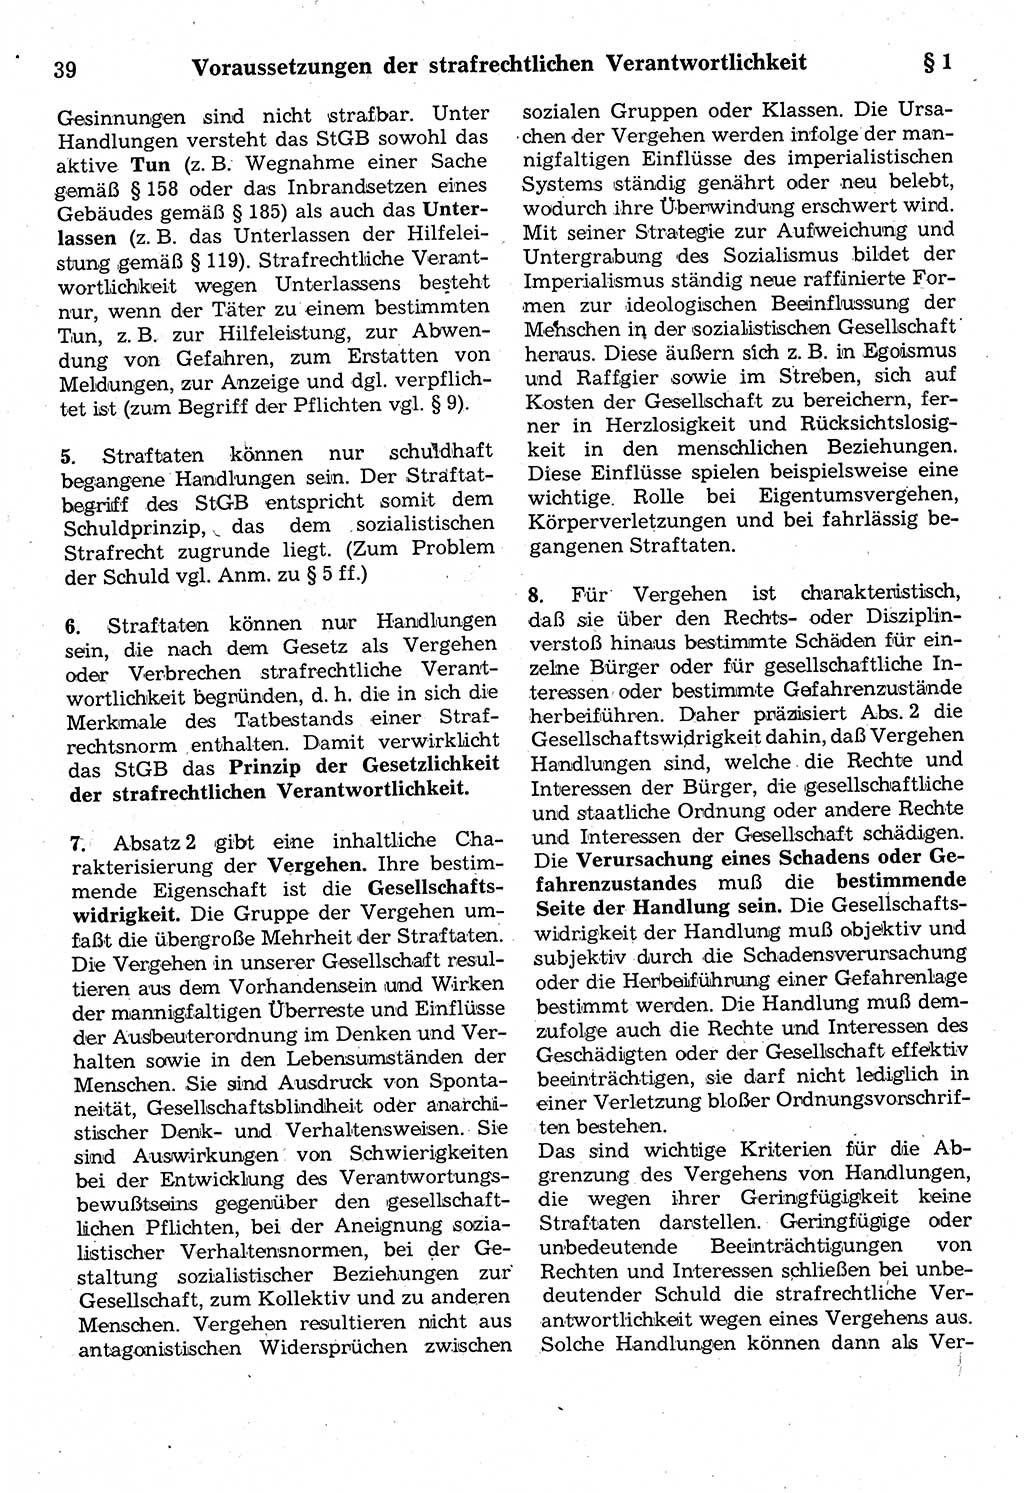 Strafrecht der Deutschen Demokratischen Republik (DDR), Kommentar zum Strafgesetzbuch (StGB) 1987, Seite 39 (Strafr. DDR Komm. StGB 1987, S. 39)